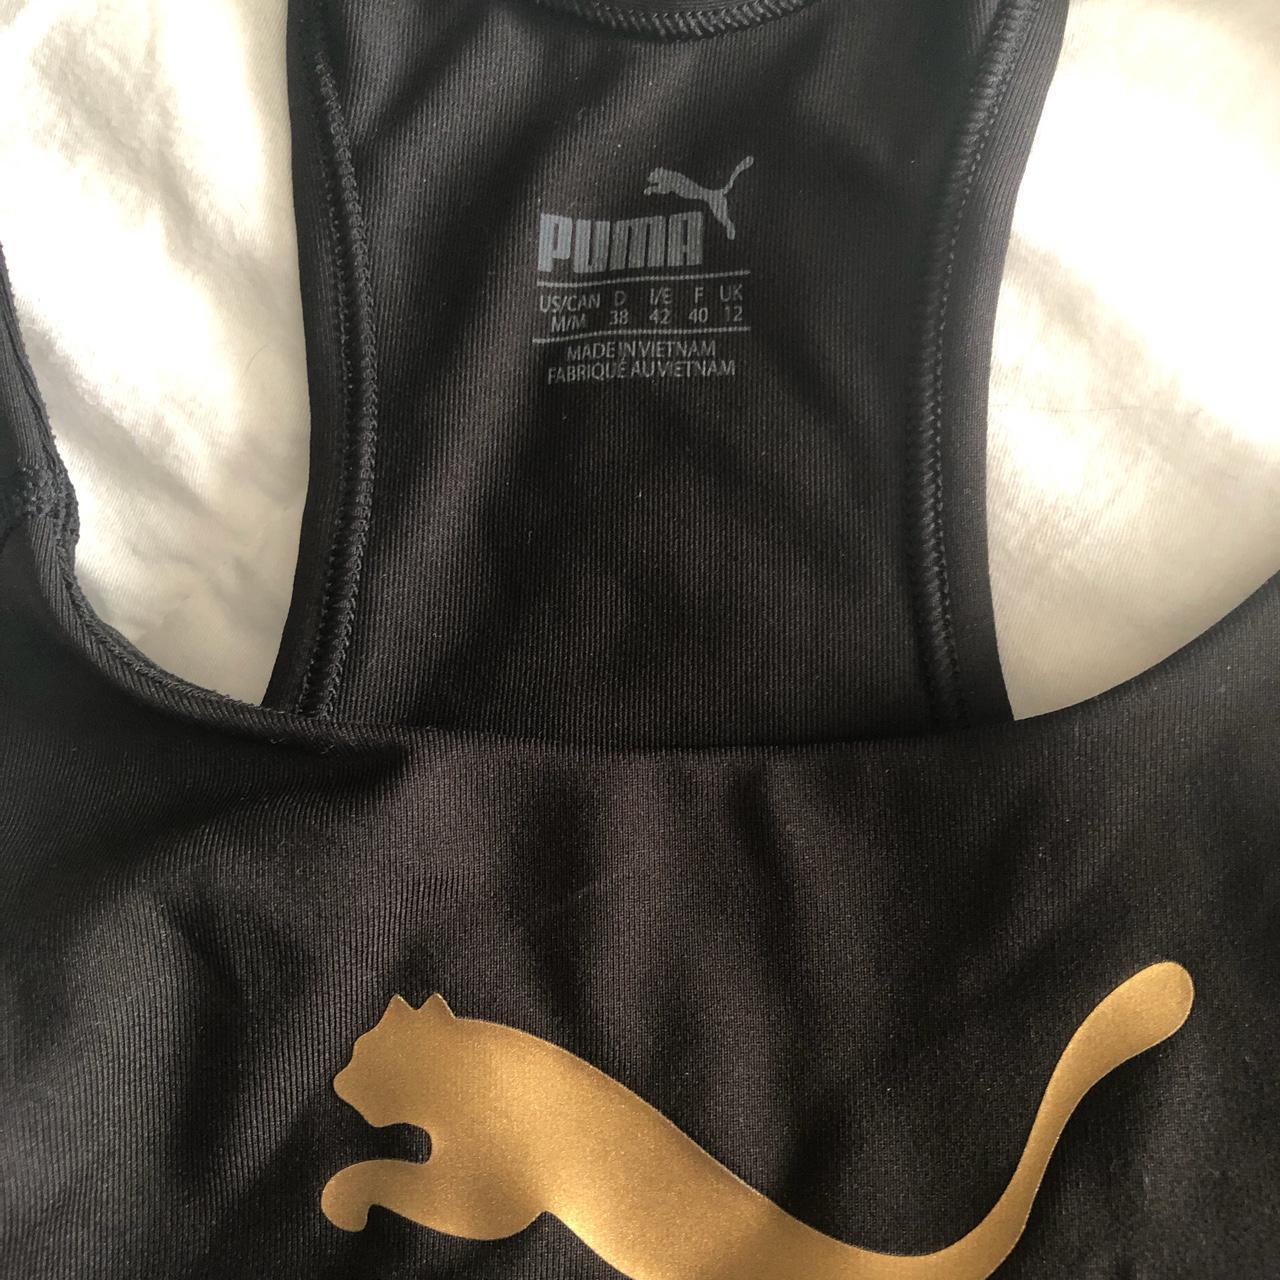 NWOT Puma Sports Bra - Size M, Black